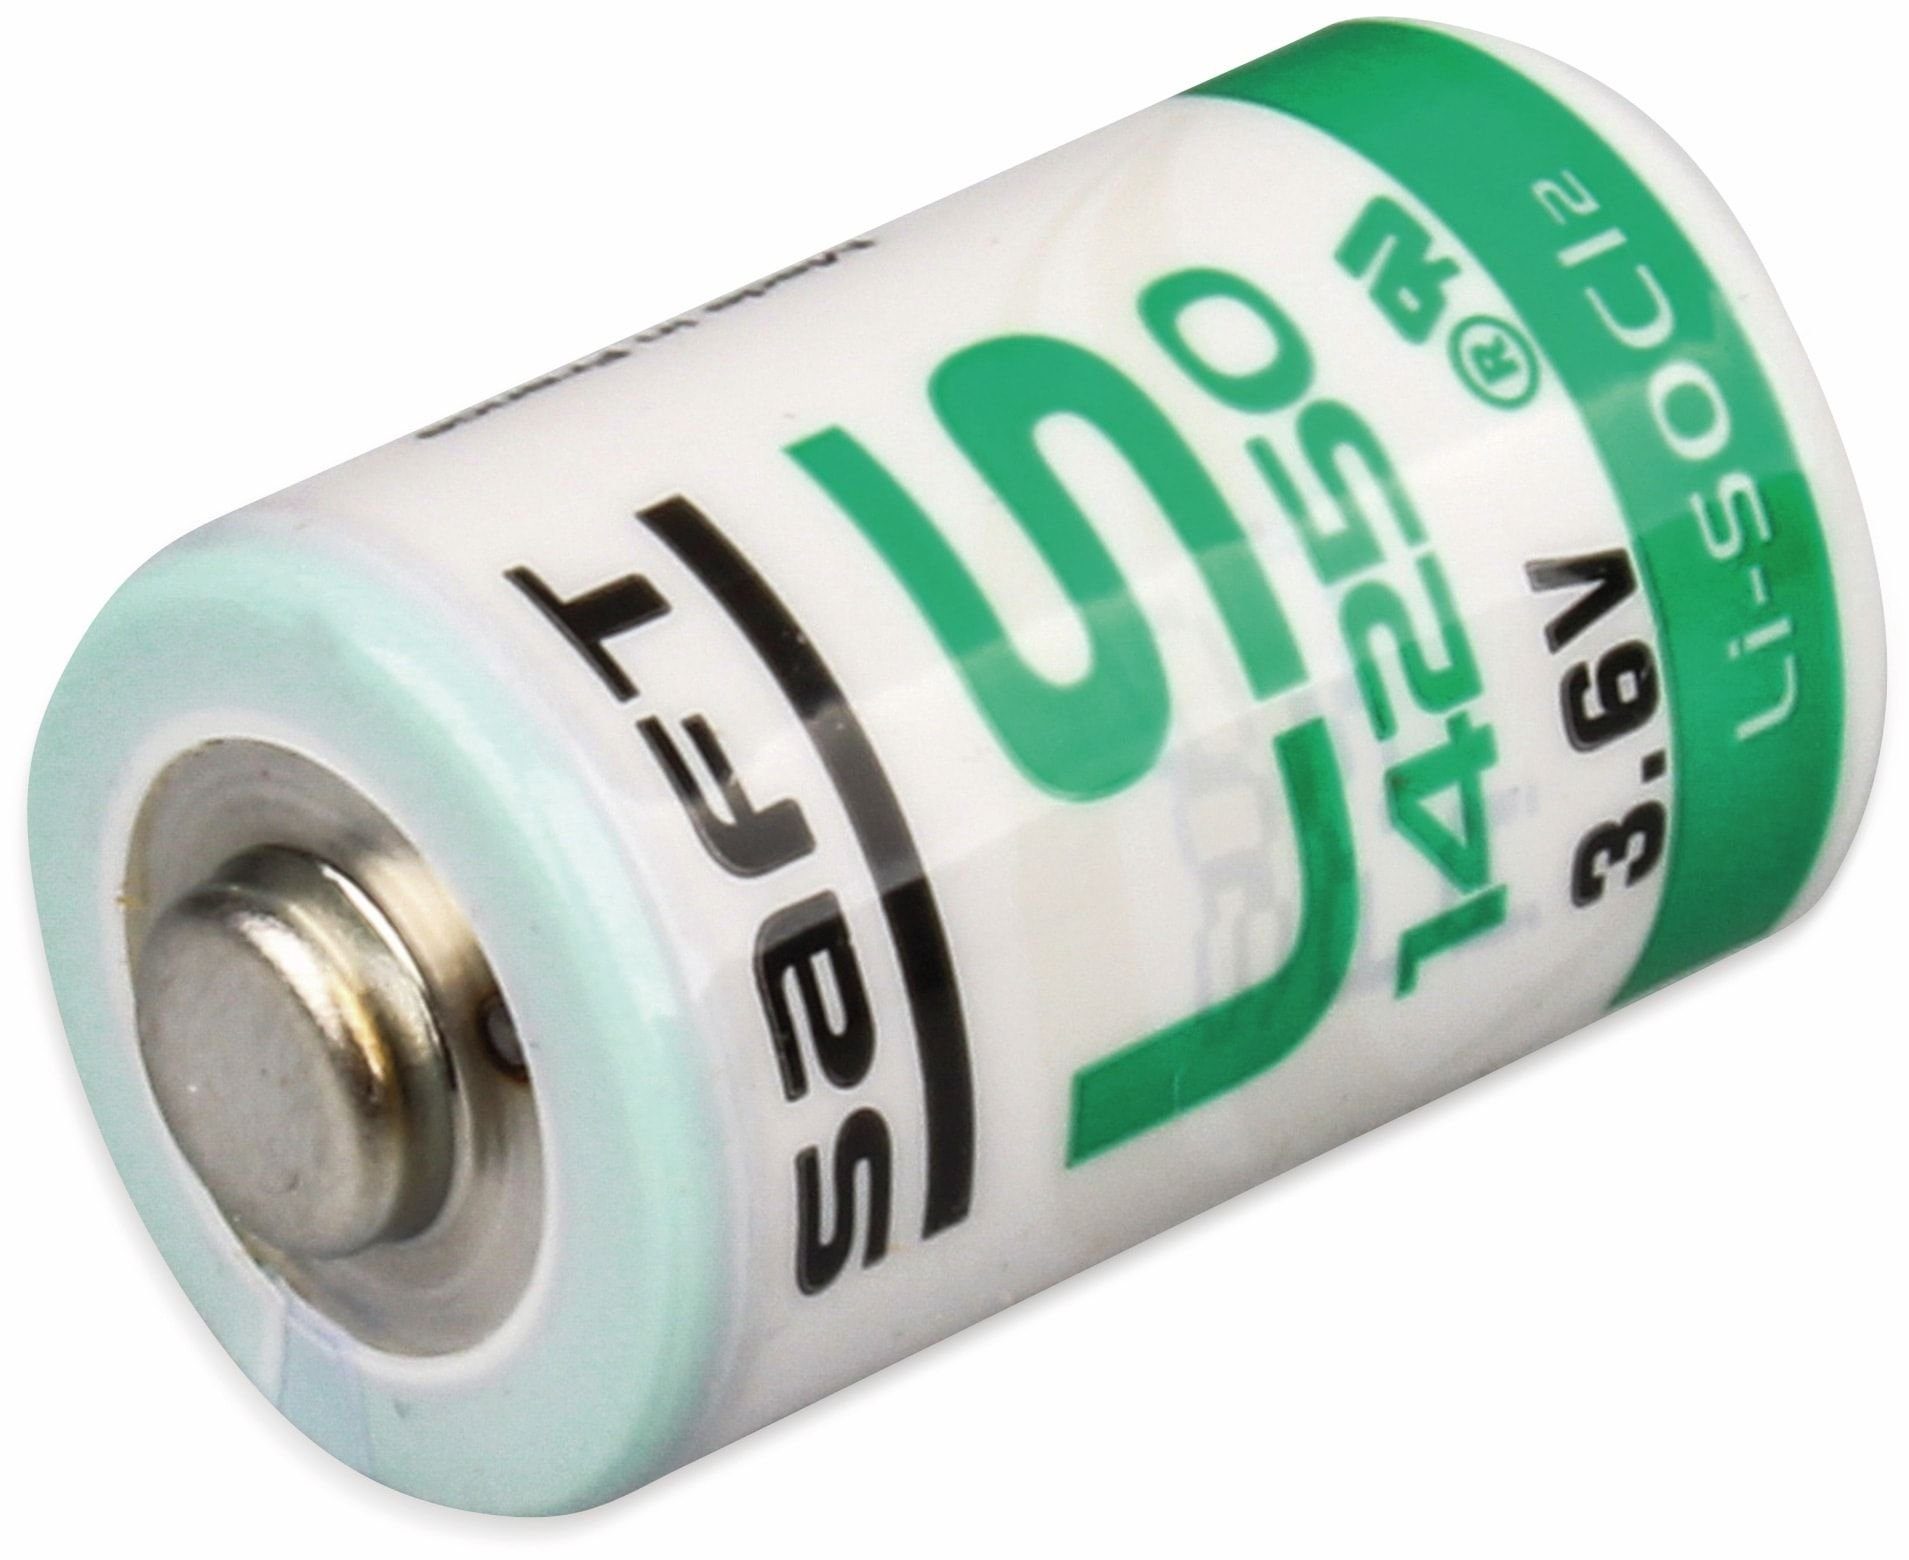 1/2 SAFT Batterie 14250, LS AA Saft (Mignon) Lithium-Batterie